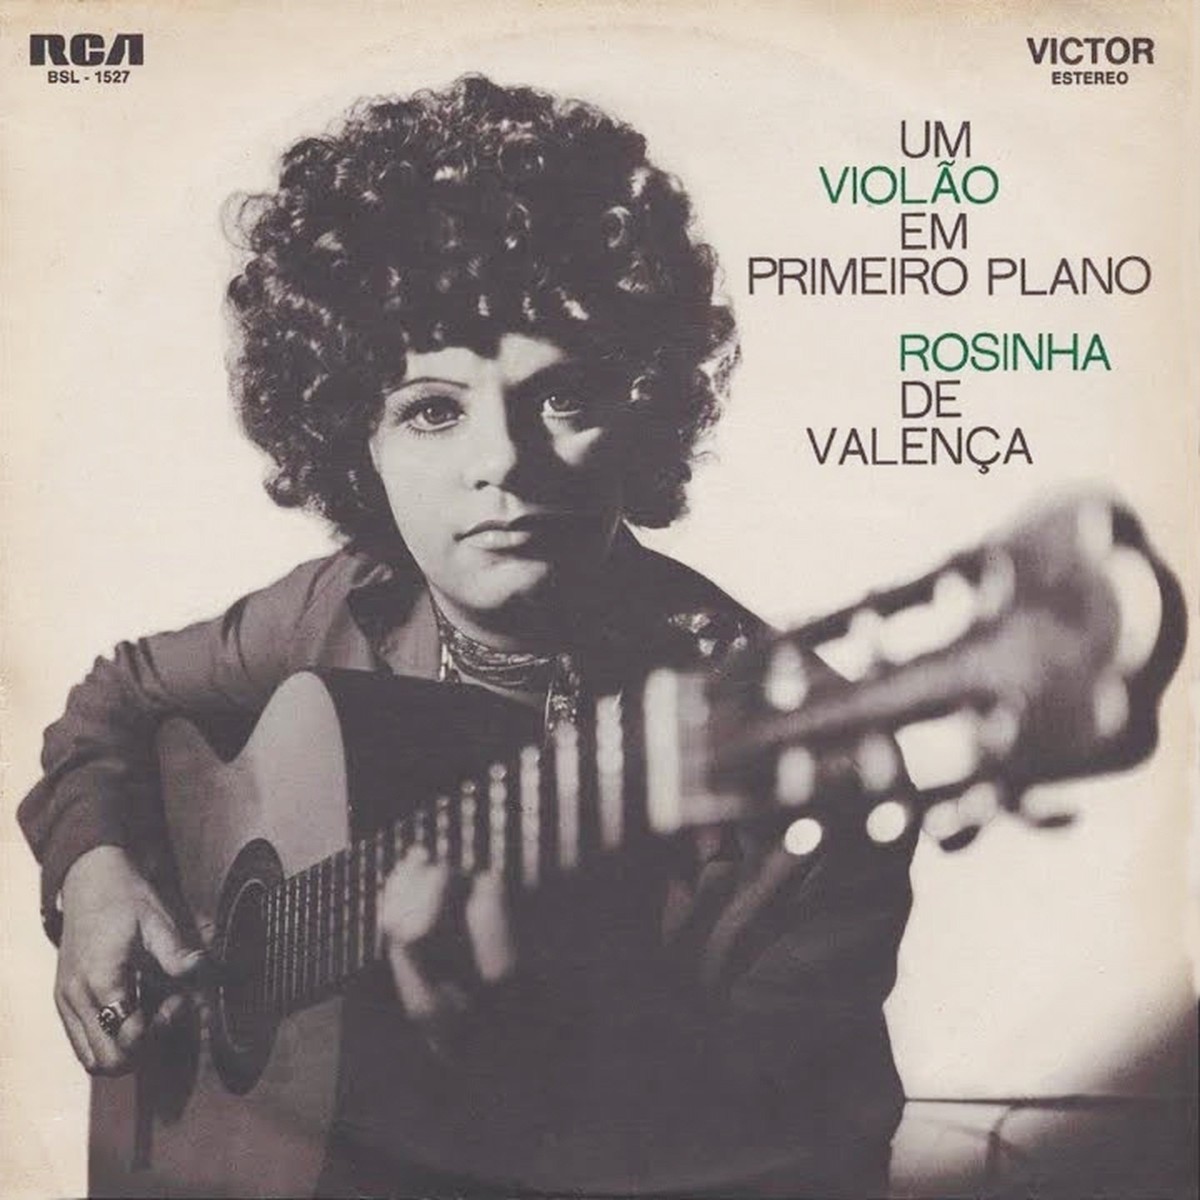 Álbum expressivo de Rosinha de Valença, ‘Um violão em primeiro plano’ ganha reedição em LP | Blog do Mauro Ferreira